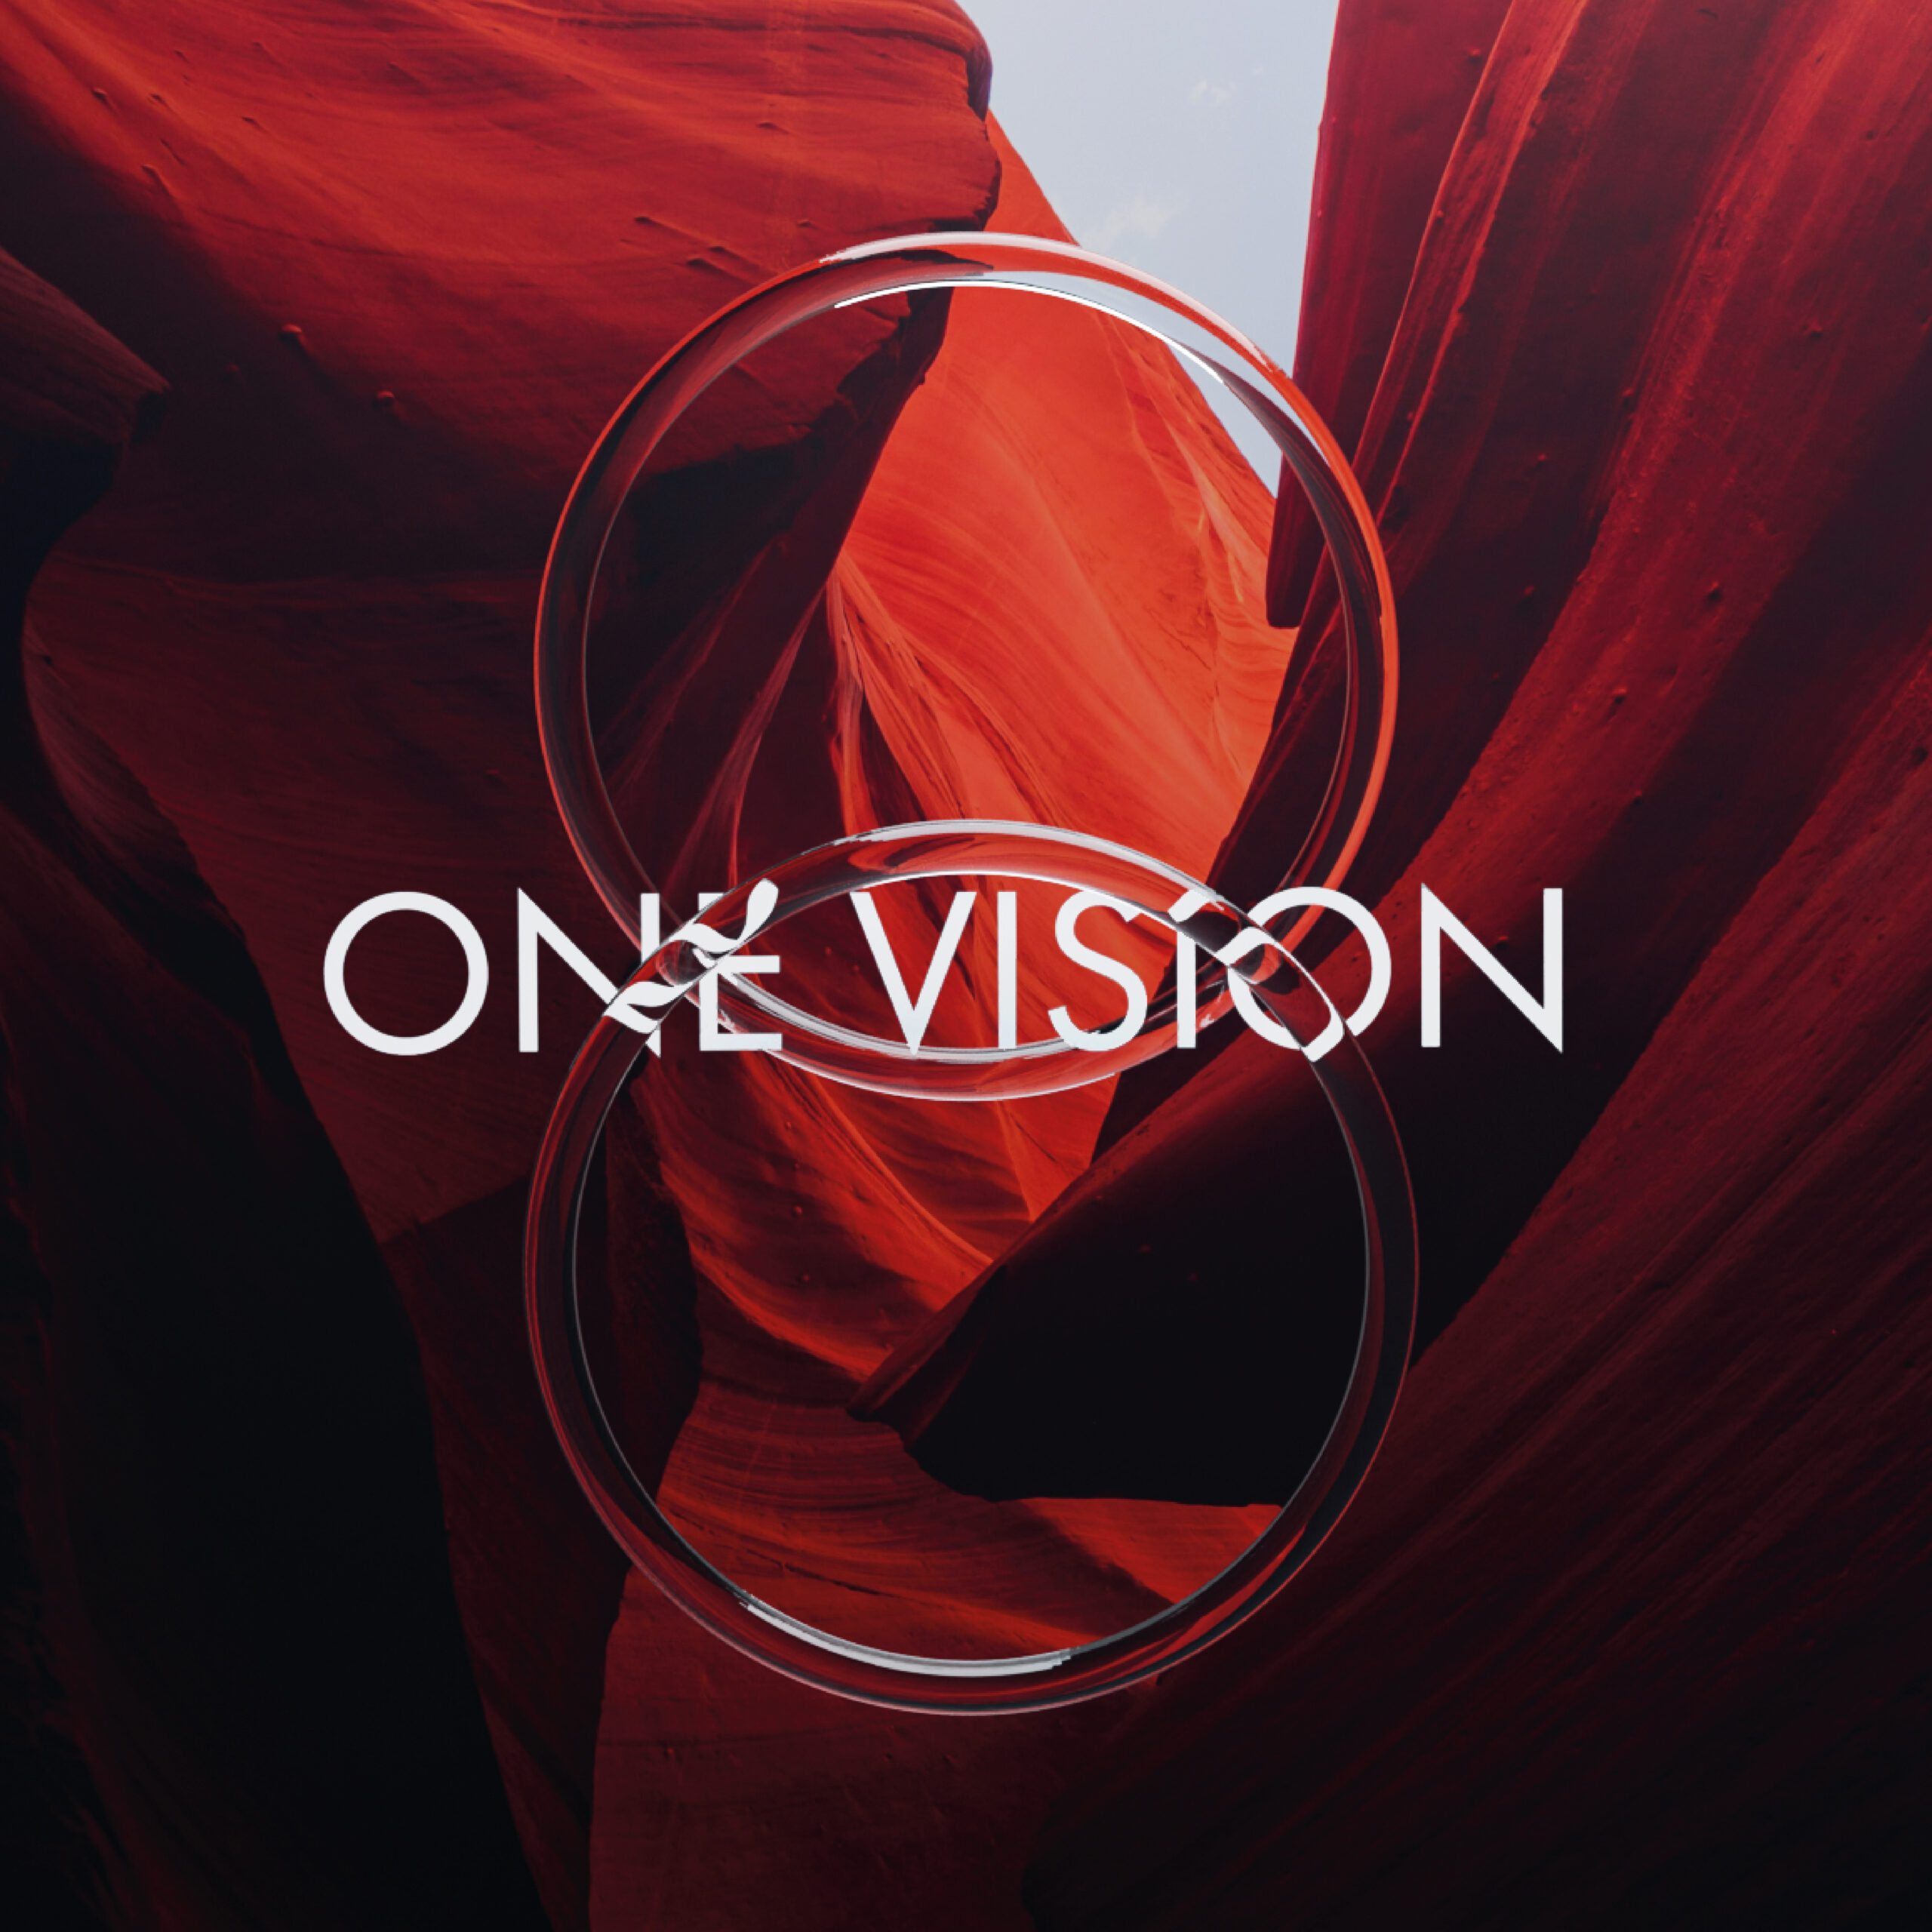 Thomas Lemmer & Oine - One Vision